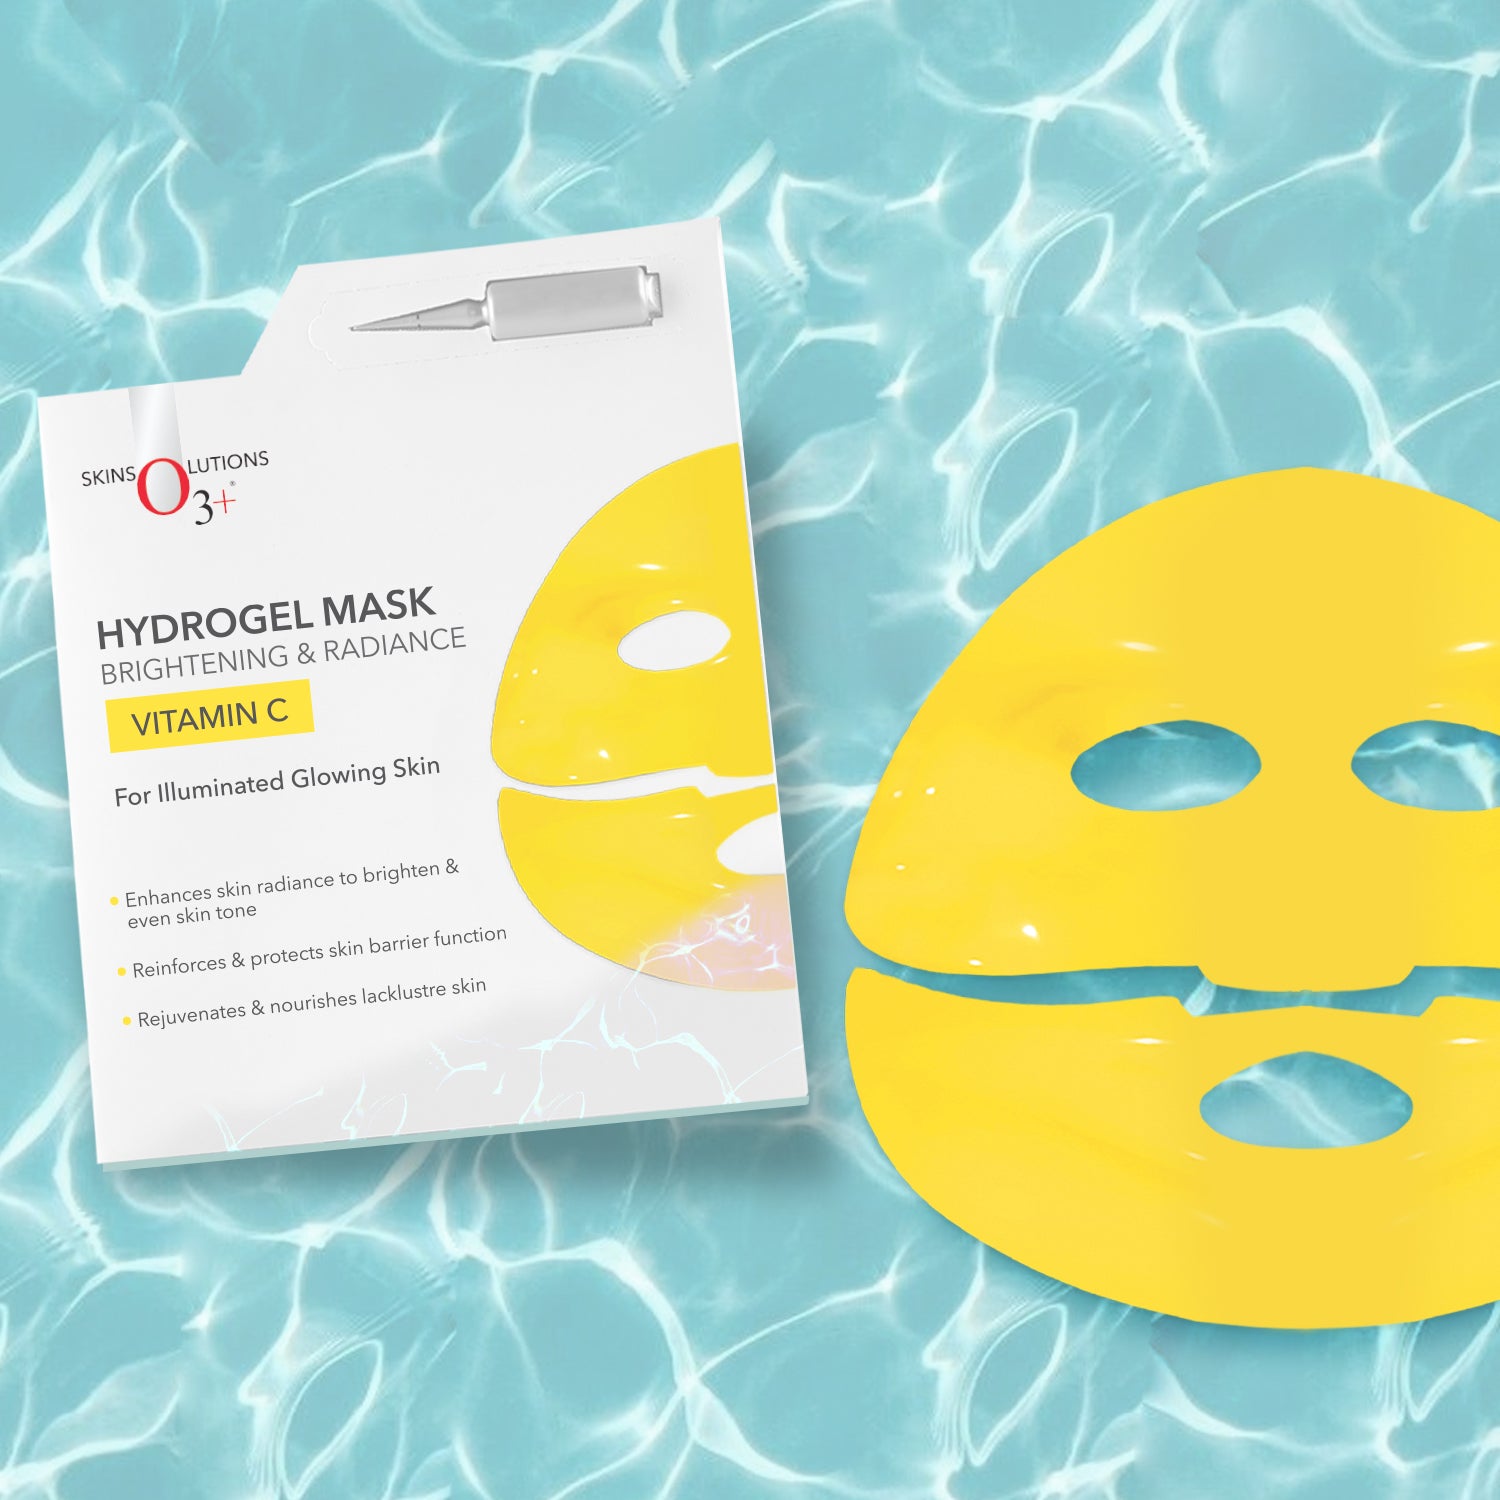 O3+ Vitamin C Hydrogel Mask